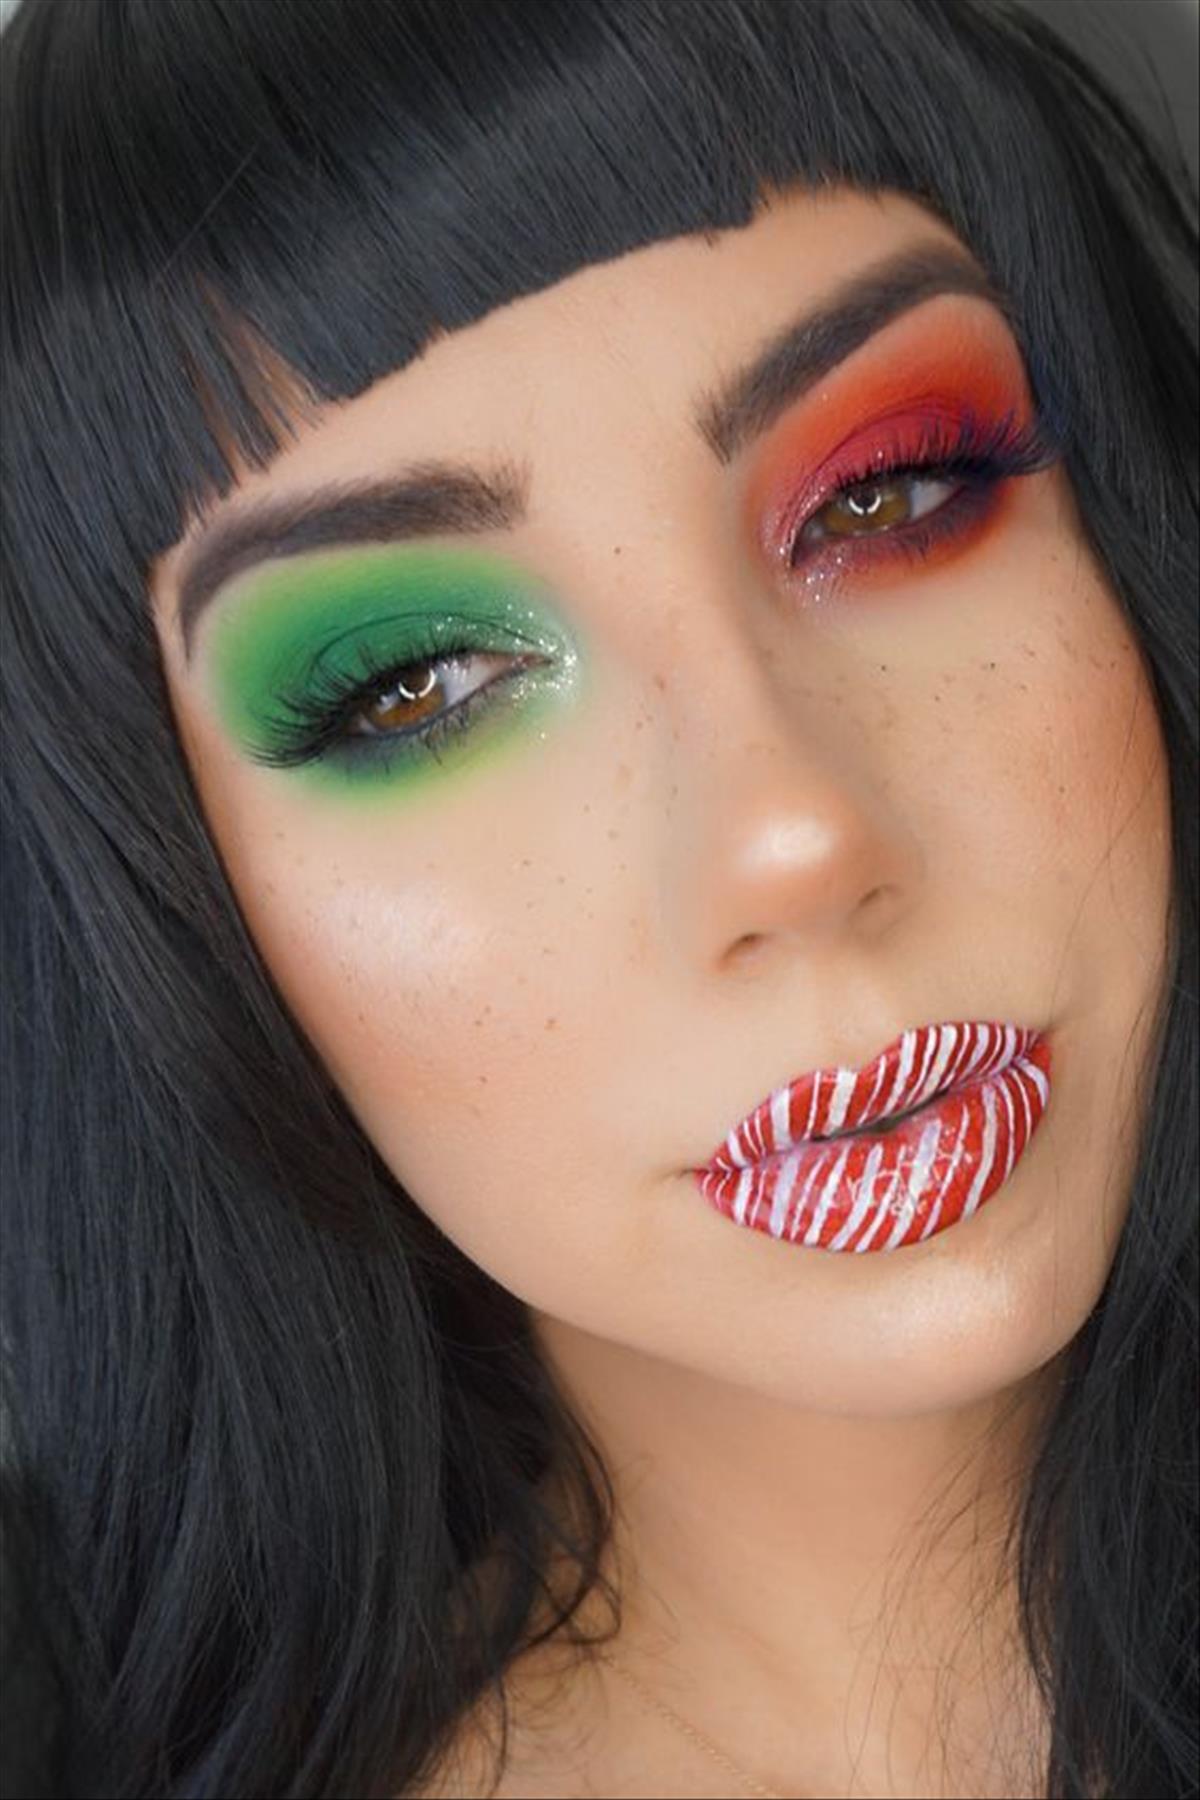 Festliches Weihnachts-Make-up sieht Ideen aus, um den Urlaub zu genießen